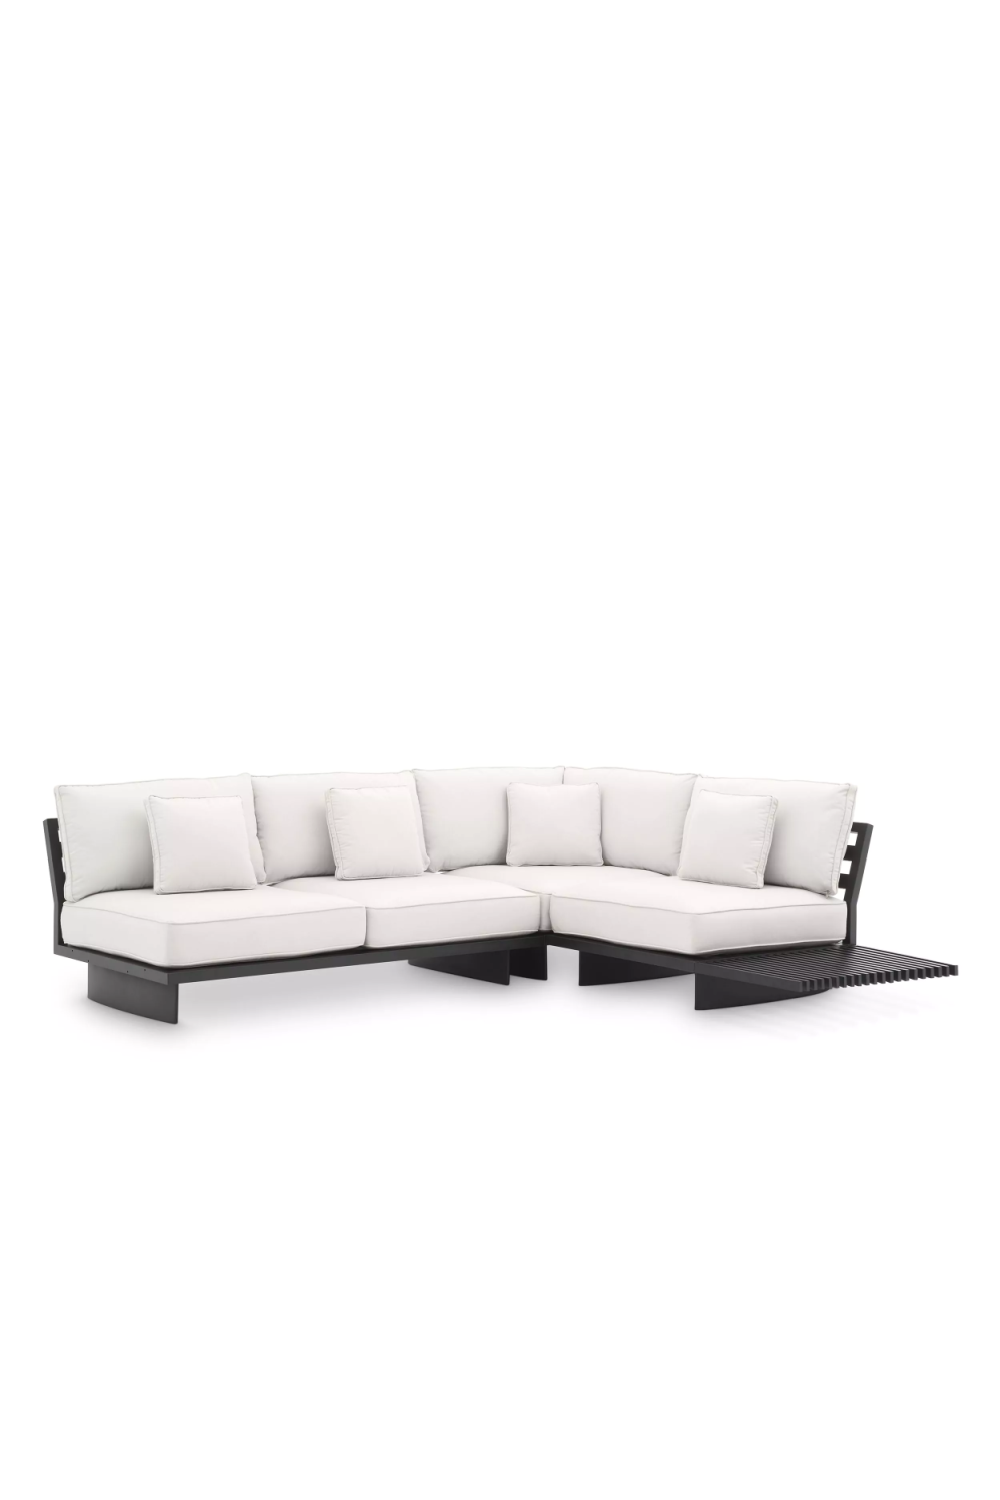 Contemporary Outdoor Sofa | Eichholtz Royal Palm | Oroa.com